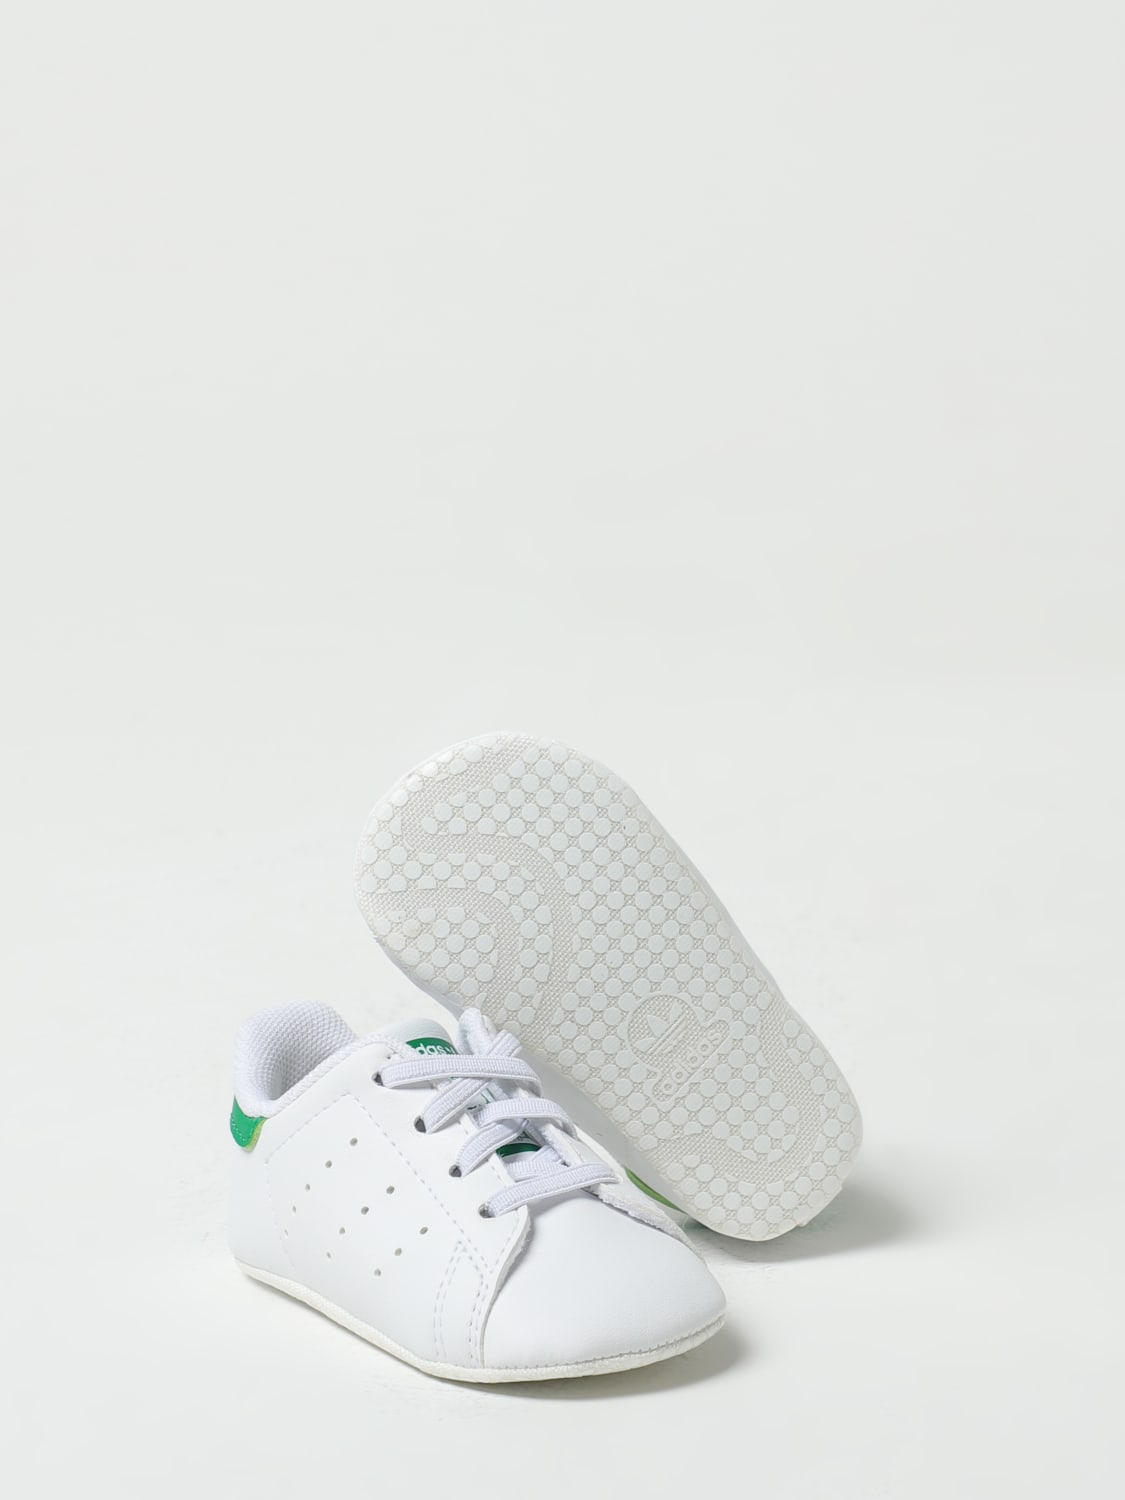 Chaussure bébé garçon - Adidas